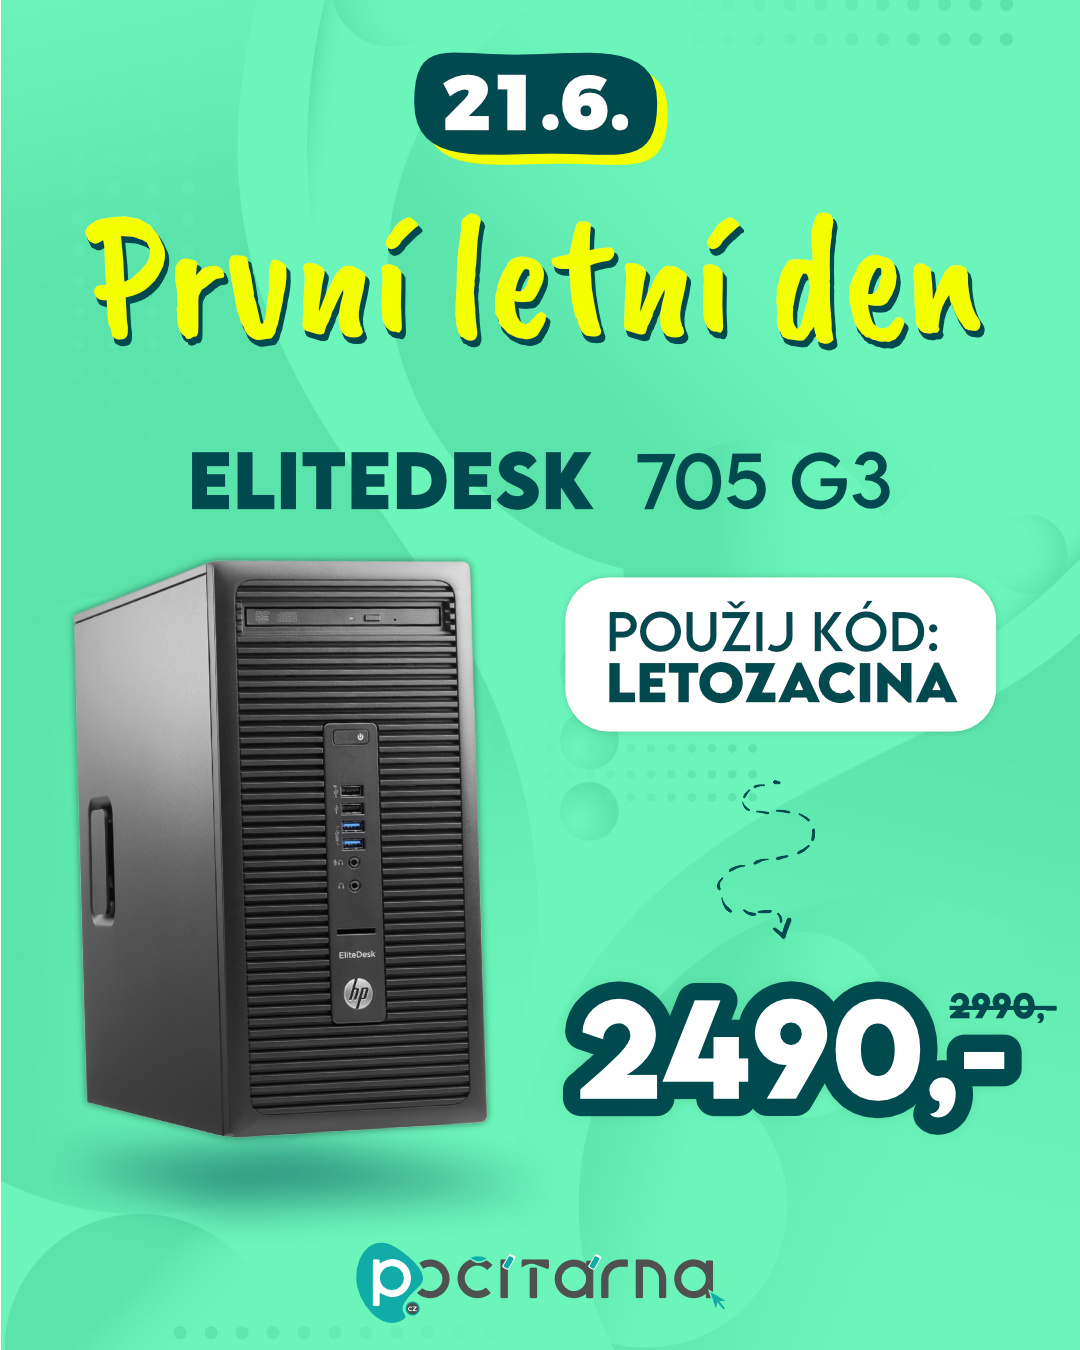 S létem přilétla sleva 500 Kč na stolní PC HP ELITEDESK 705 G3! 😊🌞